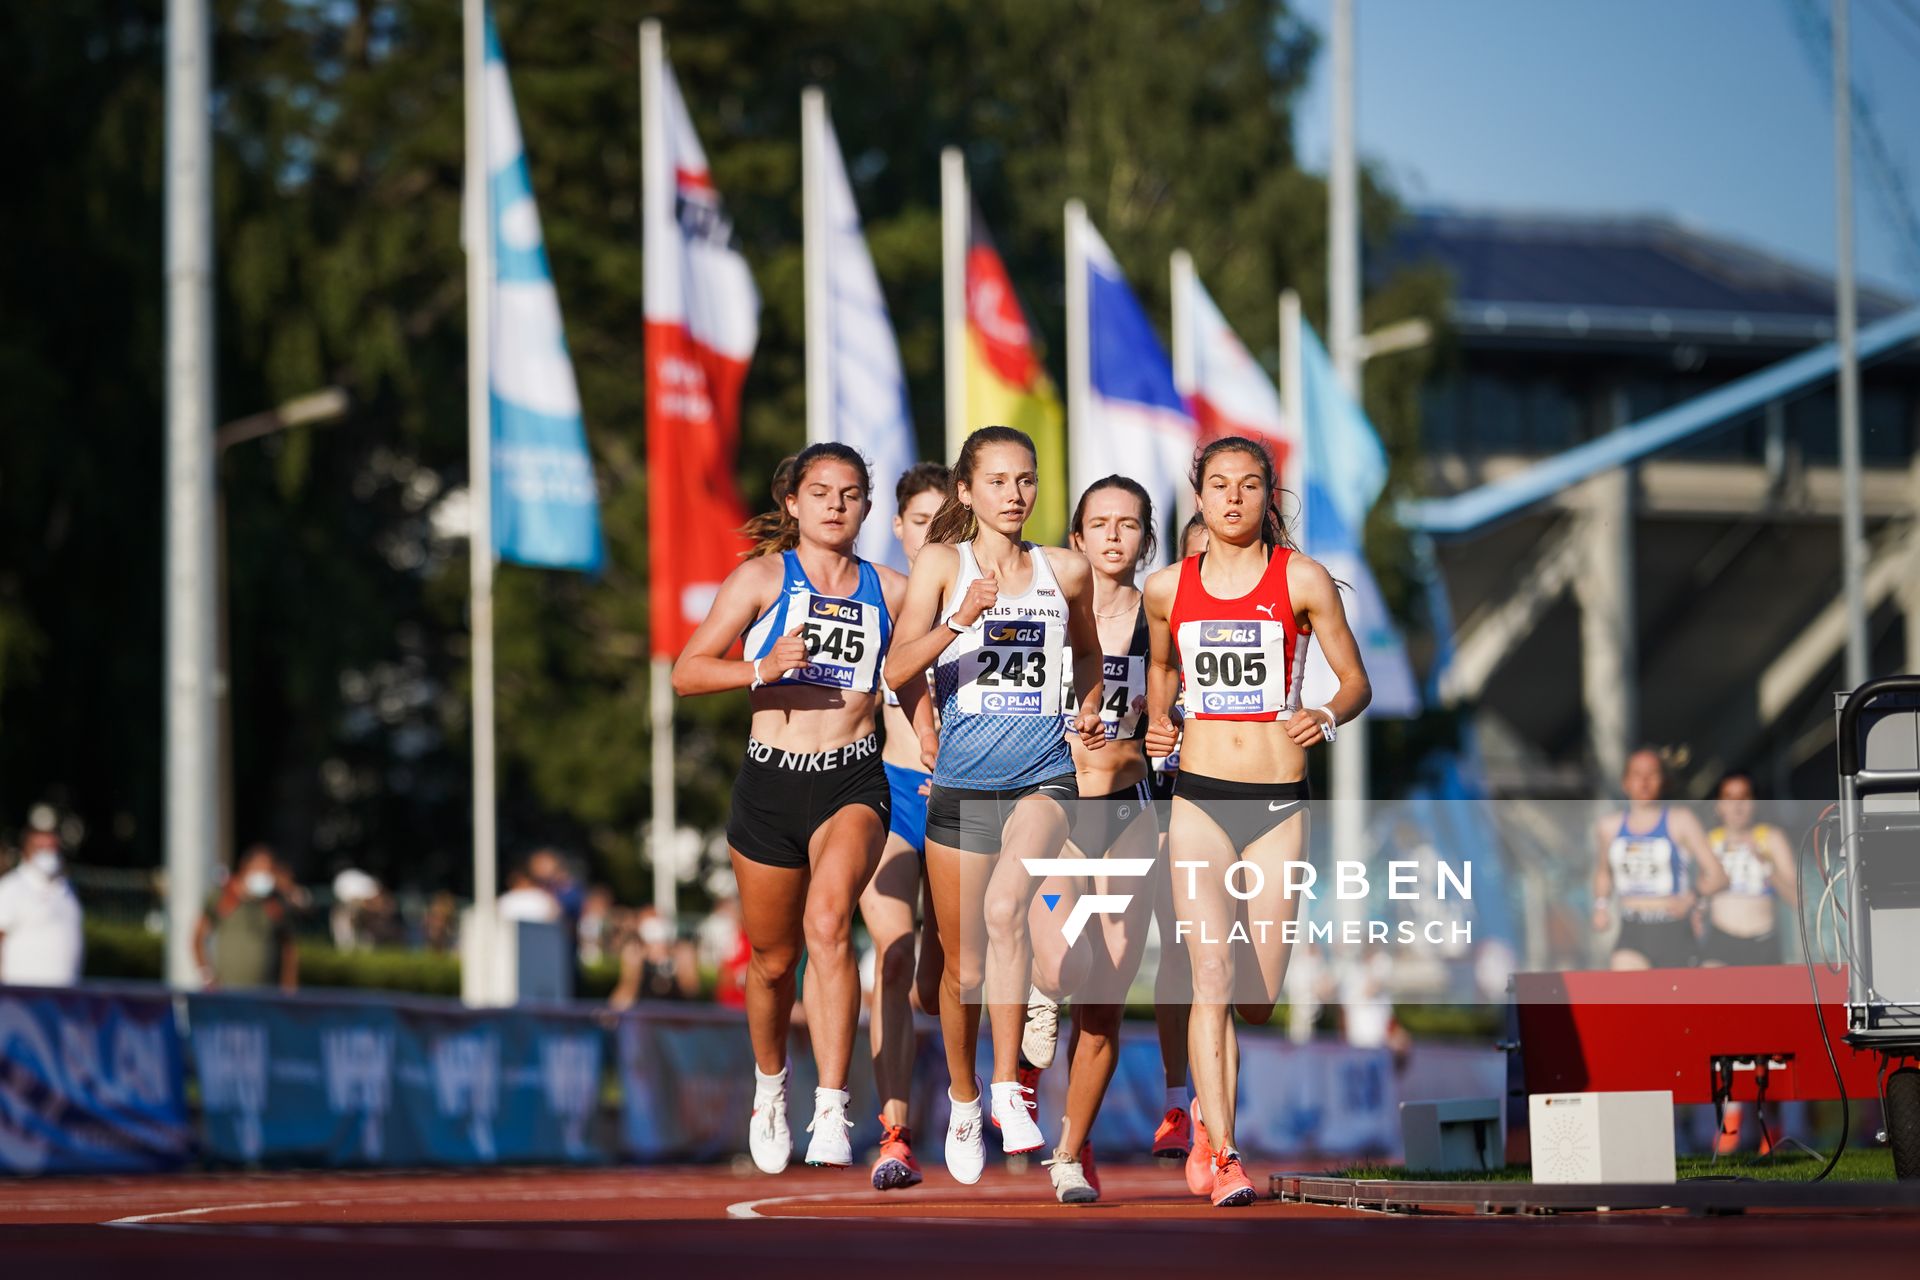 Emma Heckel (LG TELIS FINANZ Regensburg), Anneke Vortmeier (ASV Duisburg) und Johanna Pulte (SG Wenden) am 30.07.2021 waehrend den deutschen Leichtathletik-Jugendmeisterschaften 2021 in Rostock